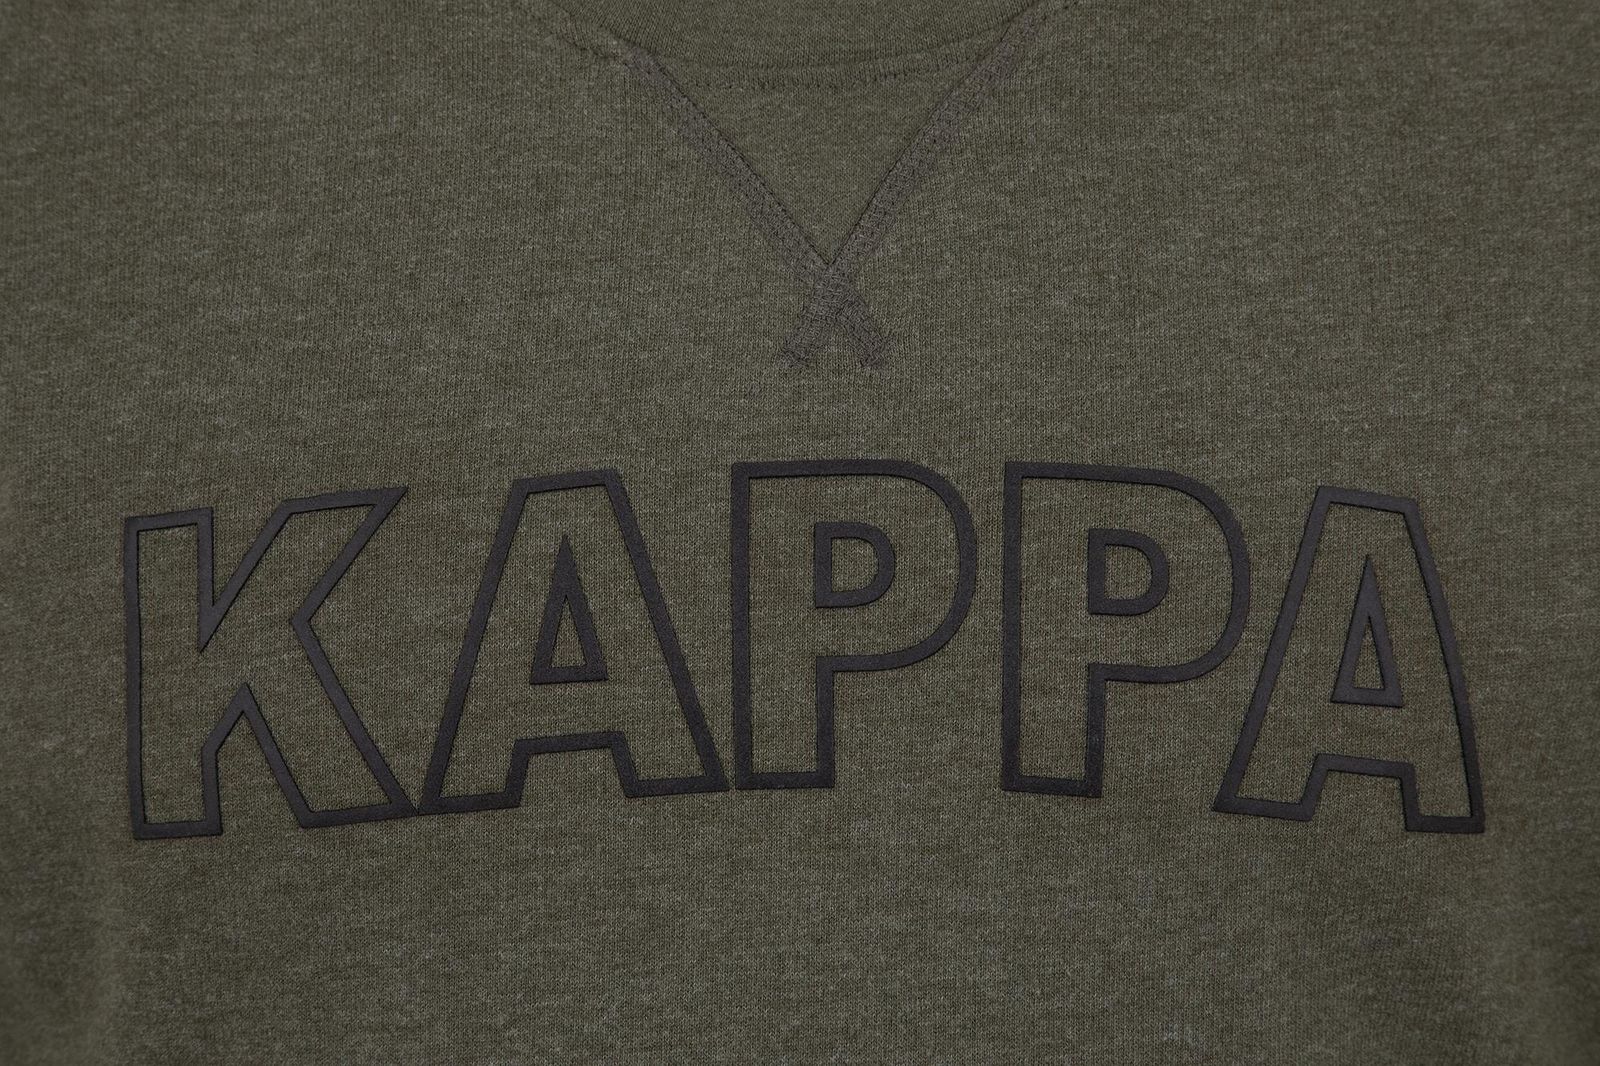   Kappa Men's Jumper, : -. 304IDL0-5U.  XL (52)